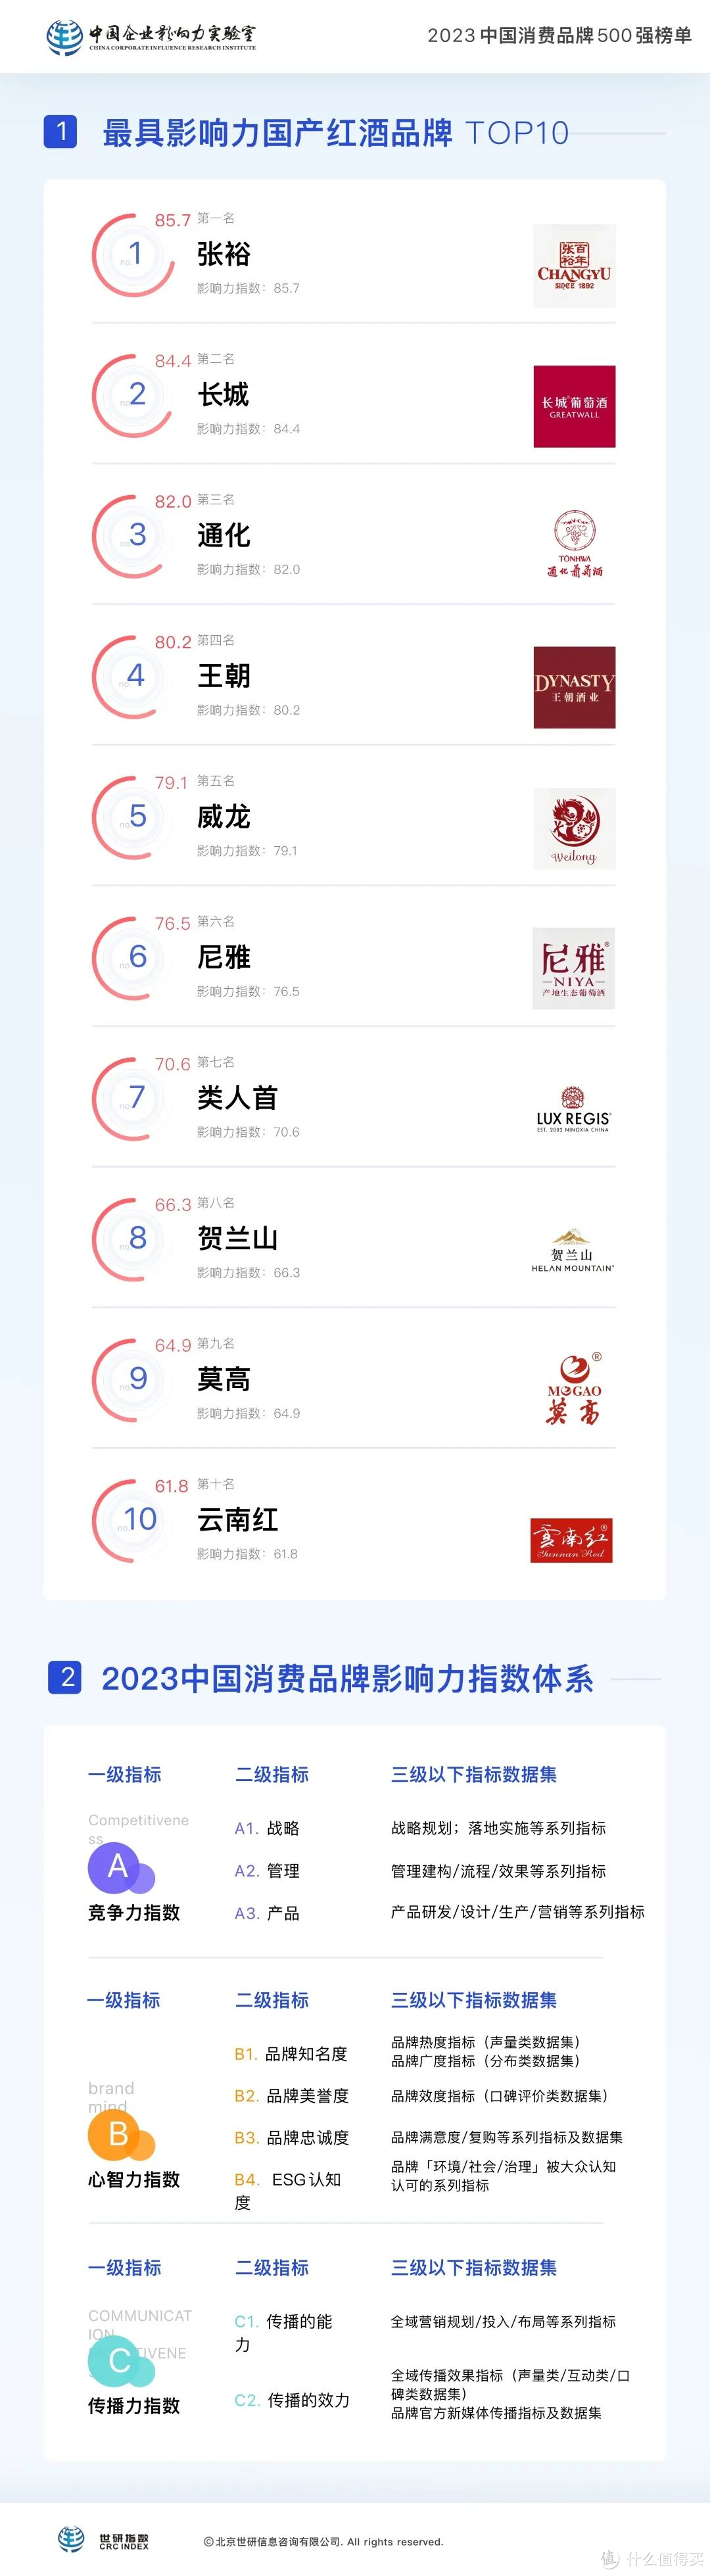 最具影响力红酒品牌TOP10【2023中国消费品牌500强系列榜单】